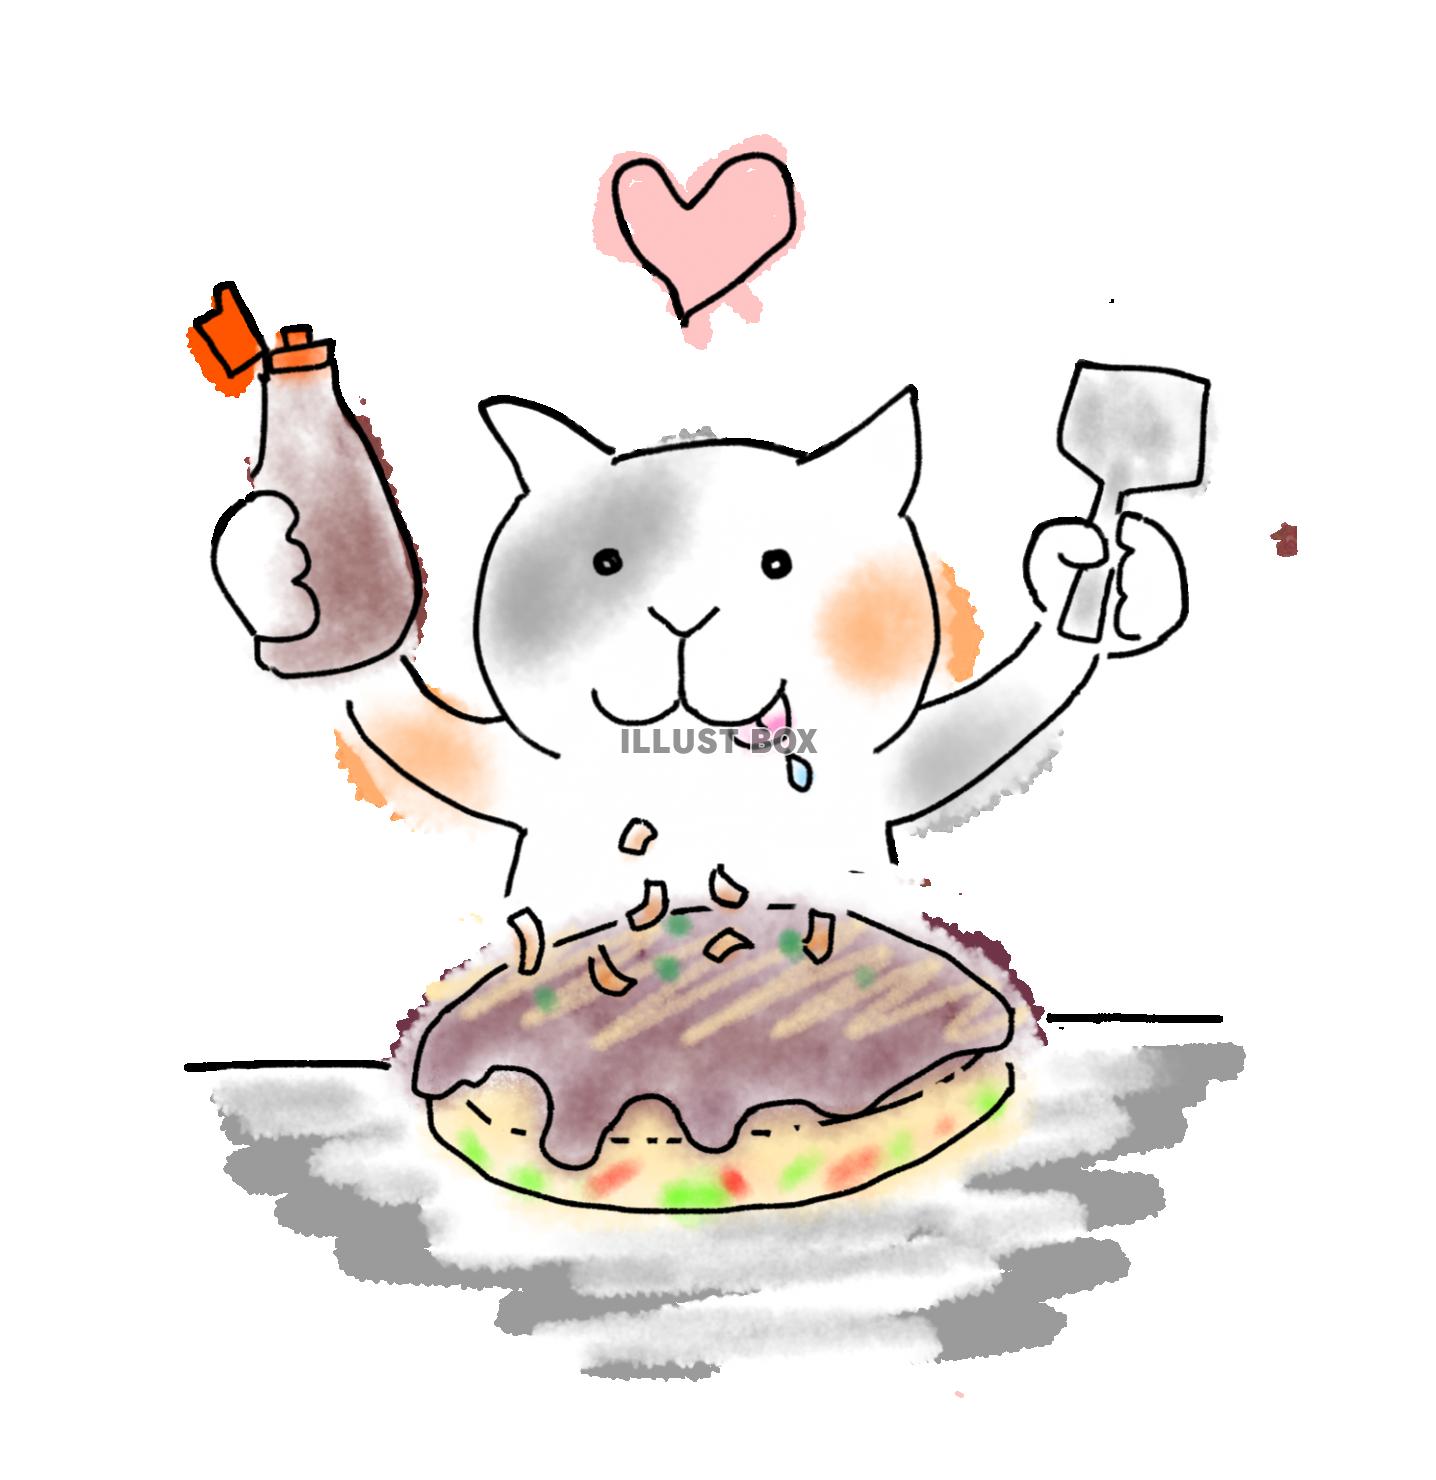 無料イラスト ゆるい手描き風イラスト 関西風お好み焼きを食べる猫